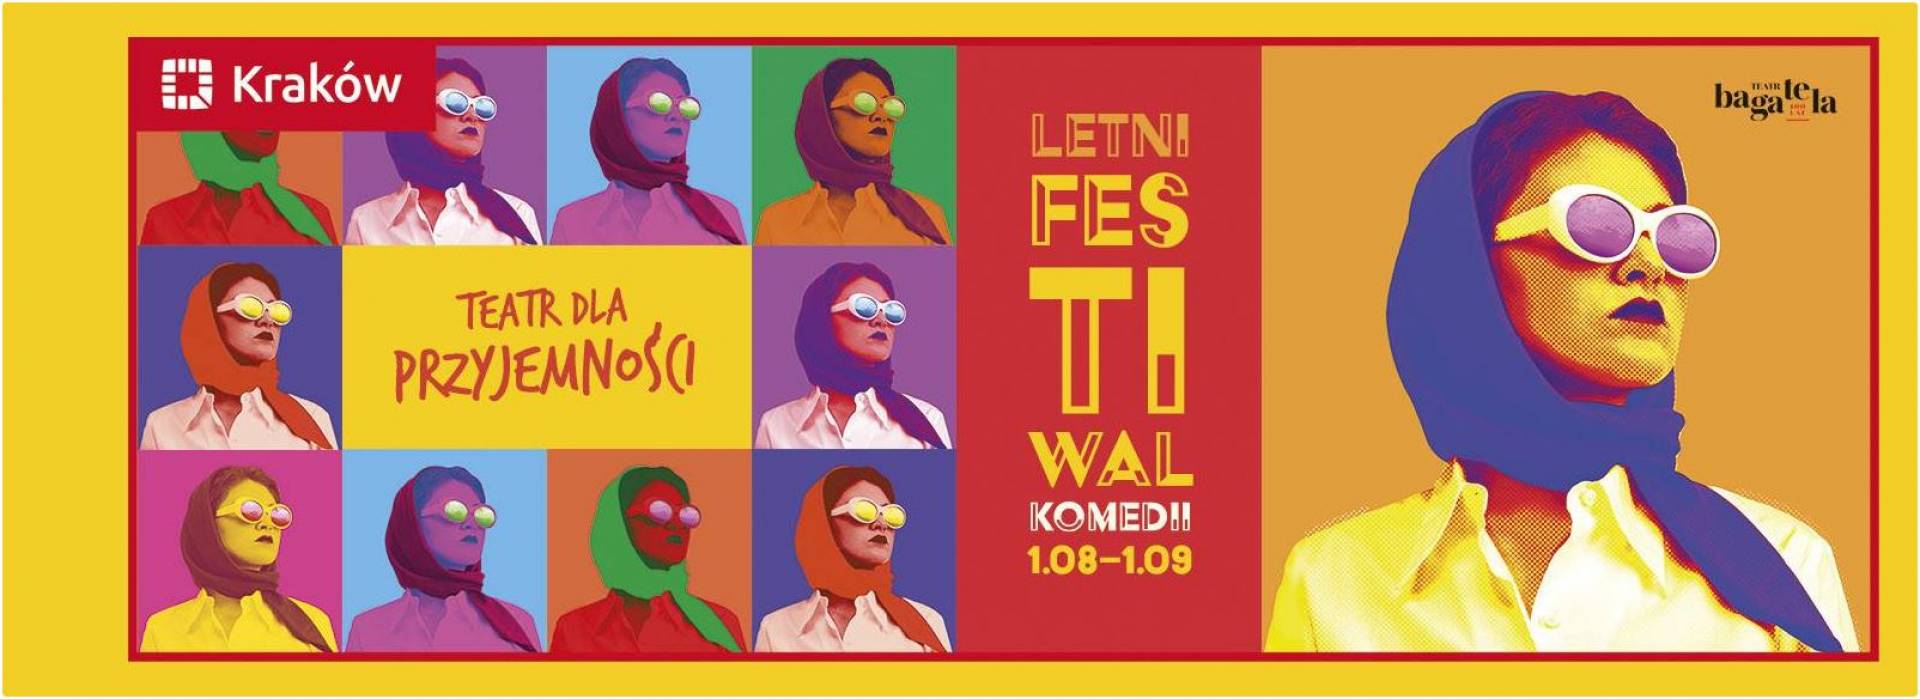 Letni Festiwal Komedii 2019